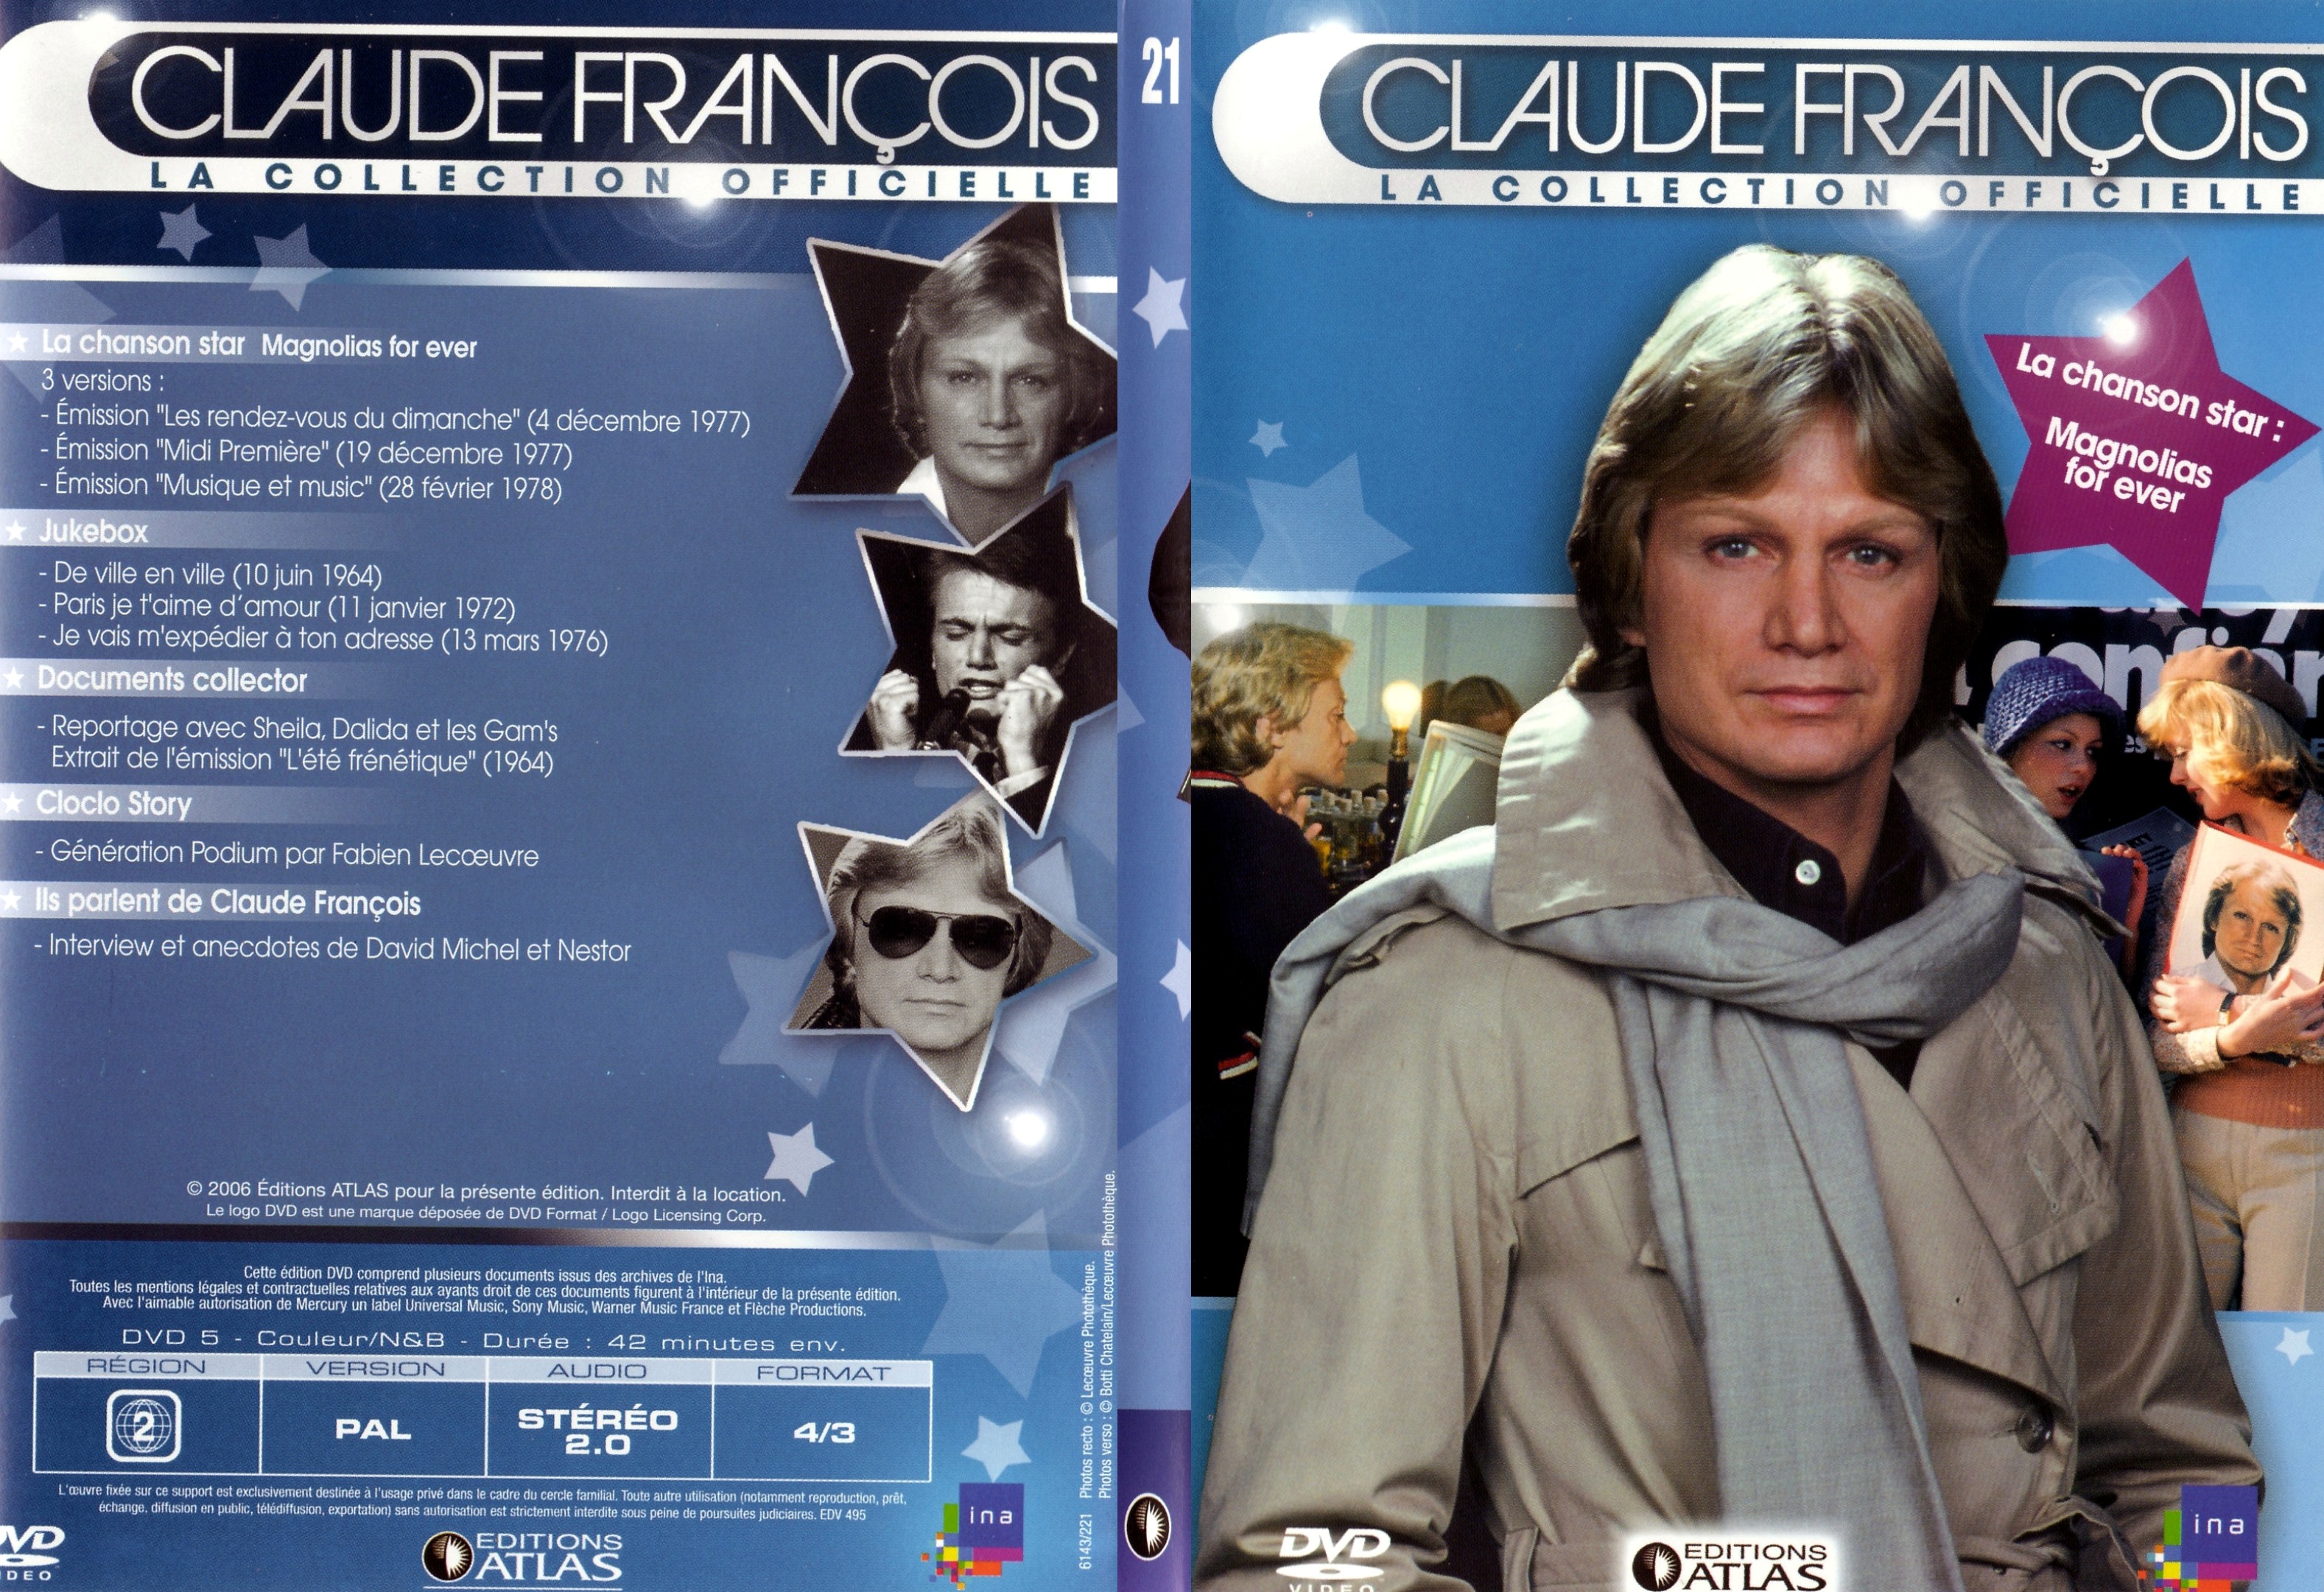 Jaquette DVD Claude francois le collection officielle vol 21 - SLIM